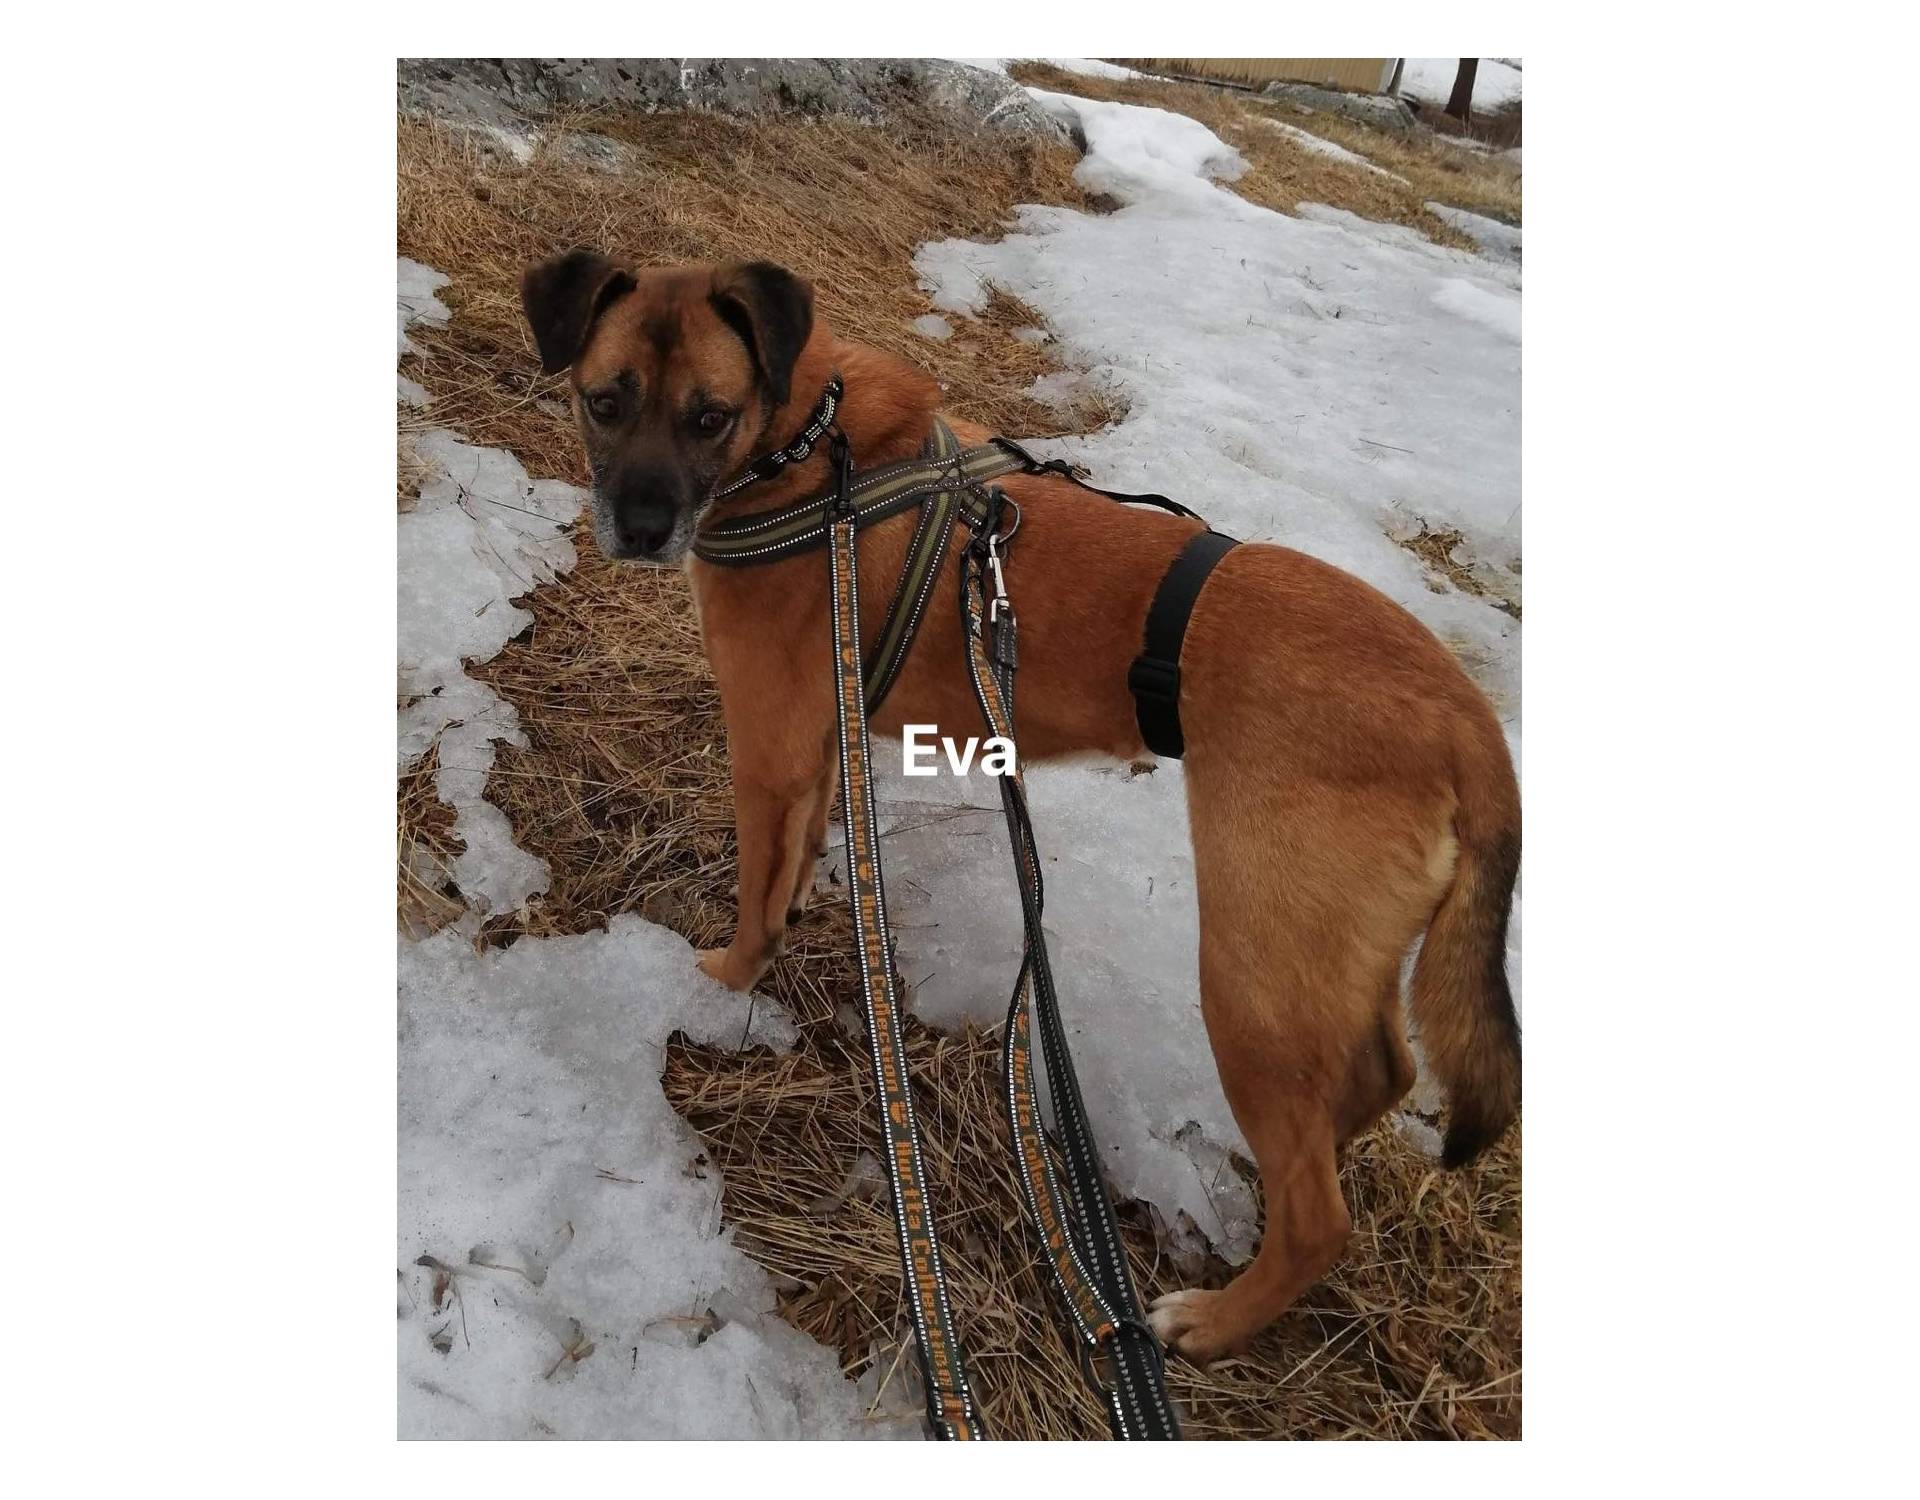 Dog for adoption Eva(F)